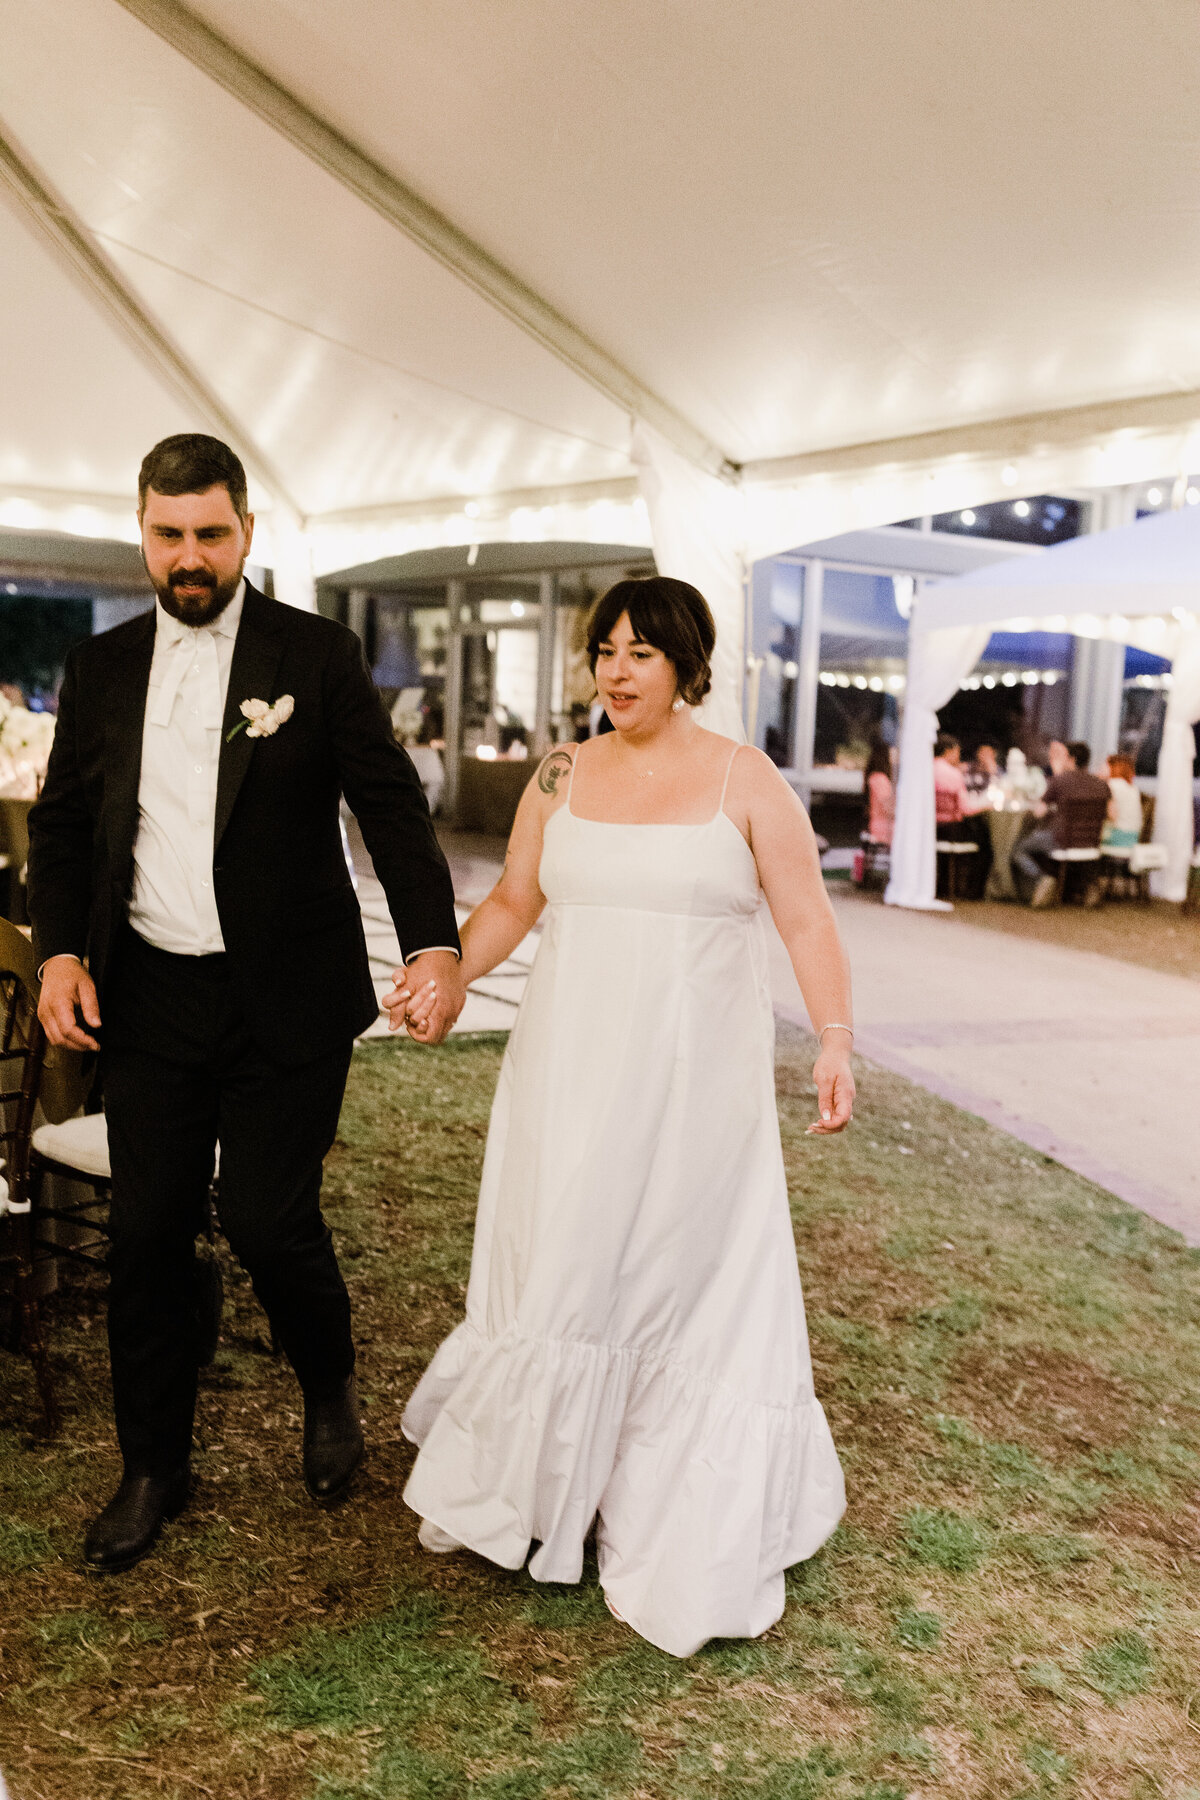 Bride and groom walking through wedding at Umlauf Sculpture Garden, Austin